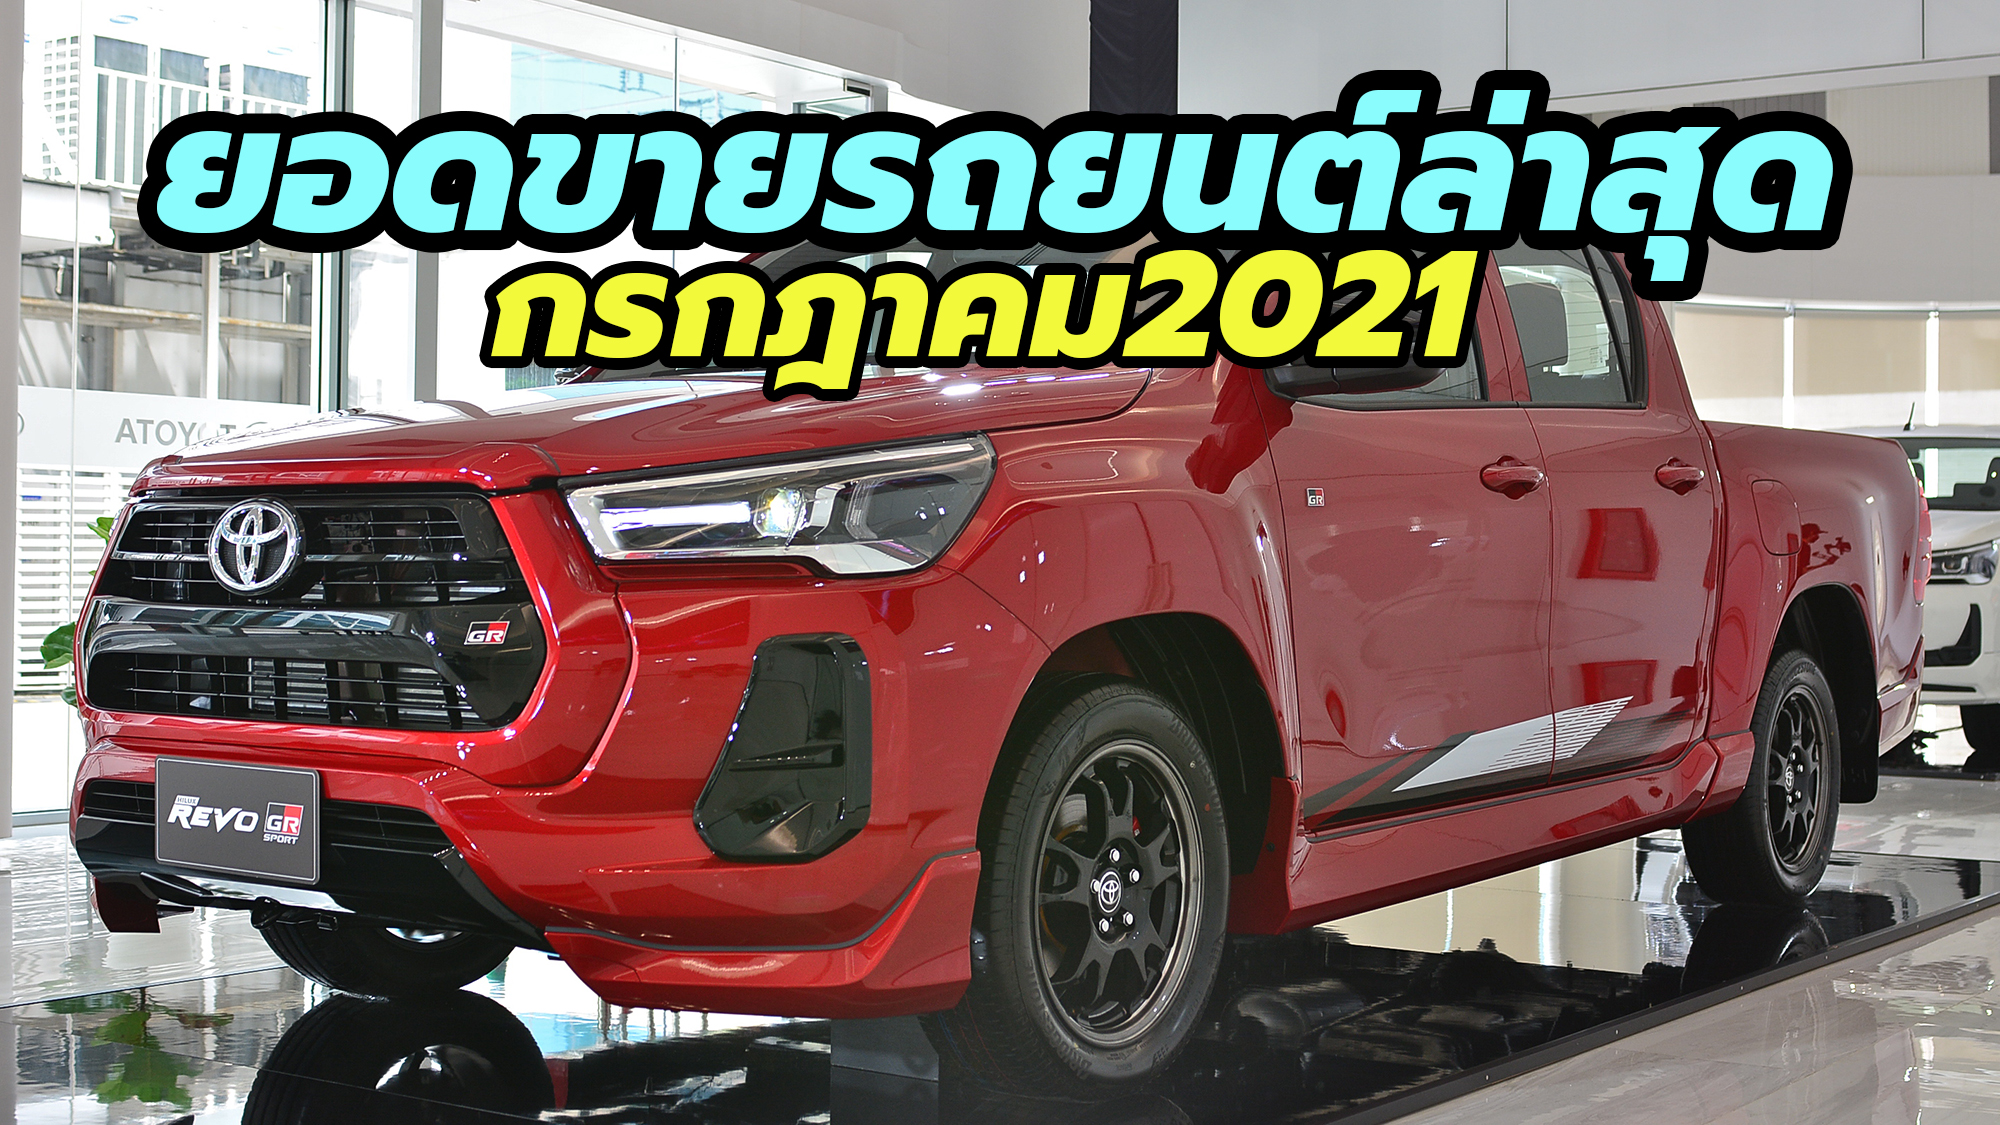 2021 Thailand car sales